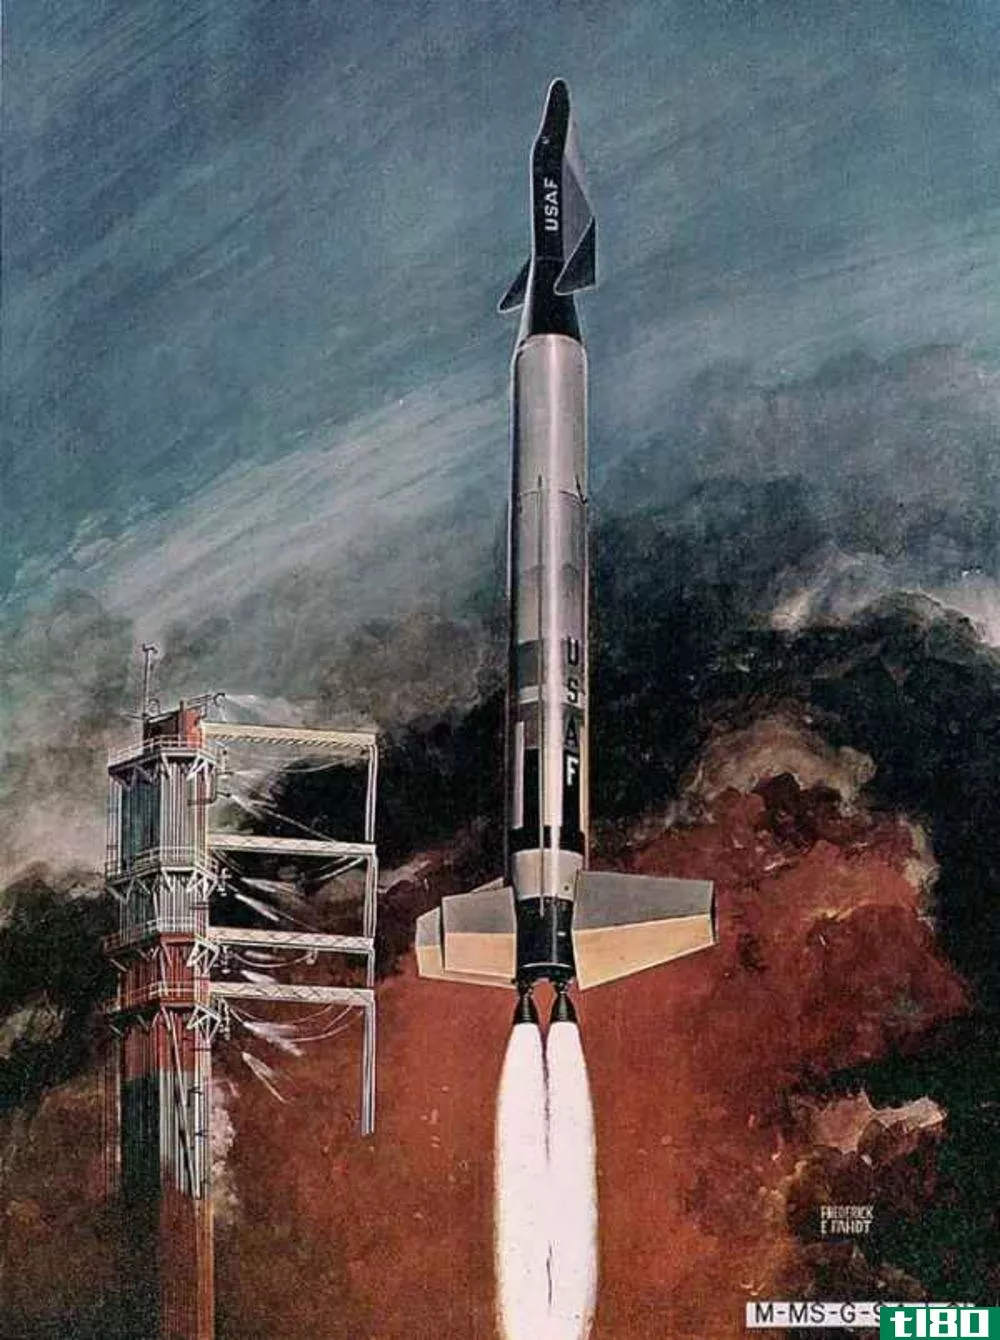 雷尔公司的天龙号航天飞机计划采用可重复使用的火箭设计与spacex公司接轨